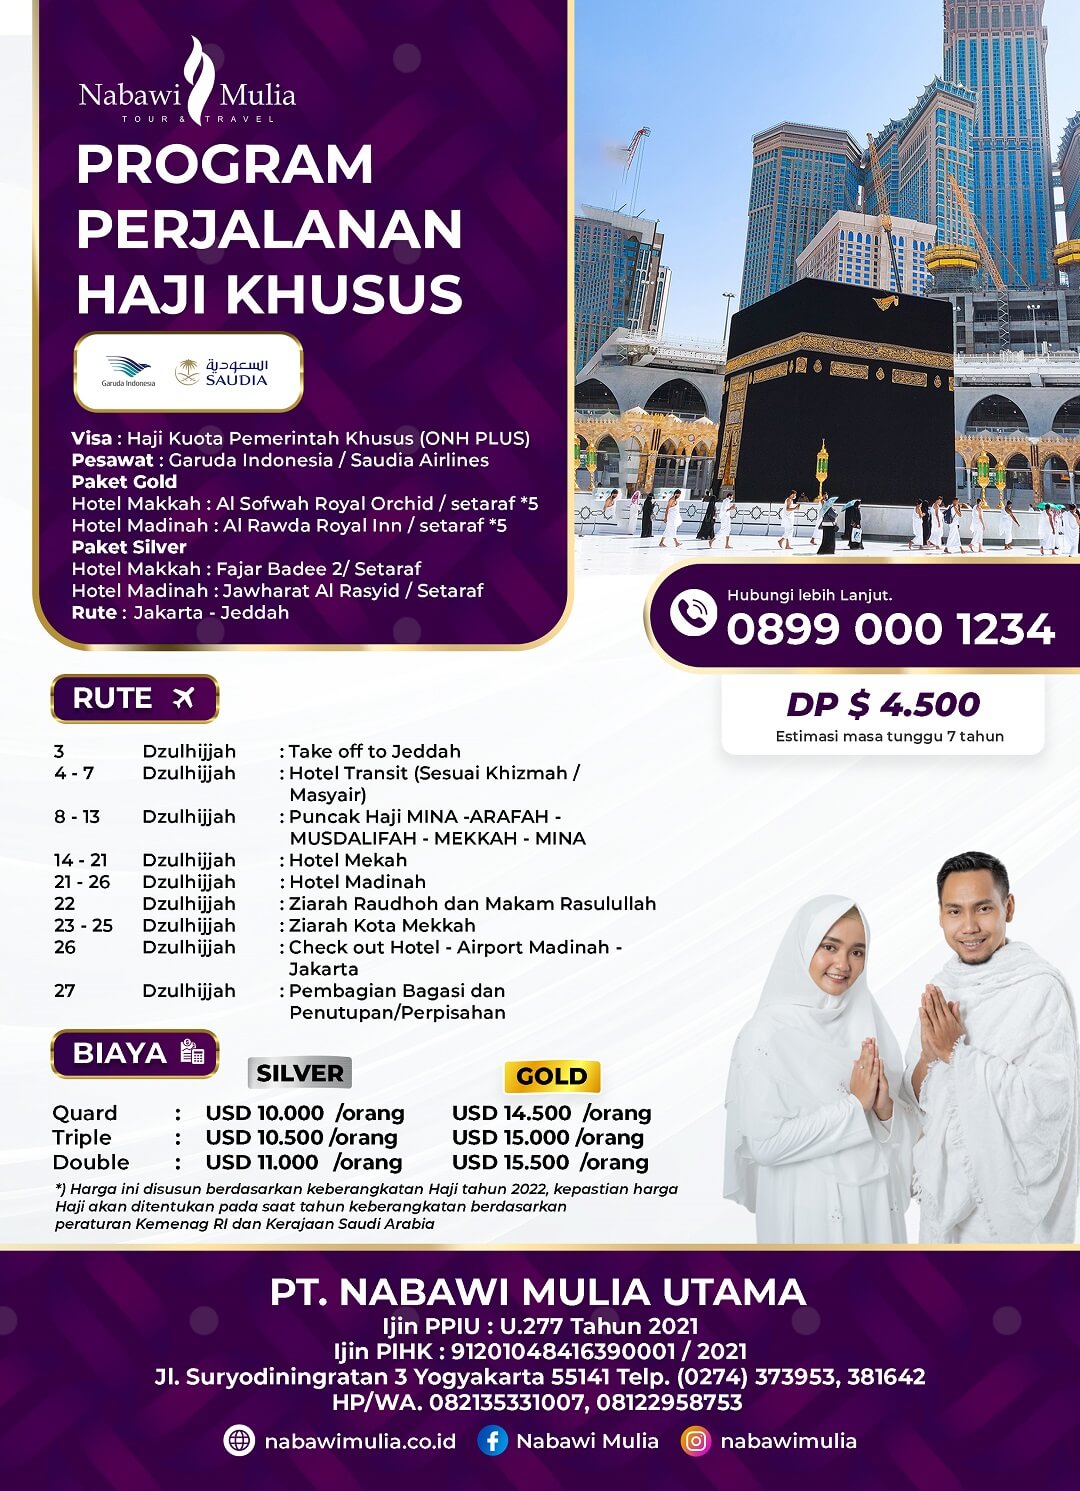 Program Perjalanan Haji KhususSS V2